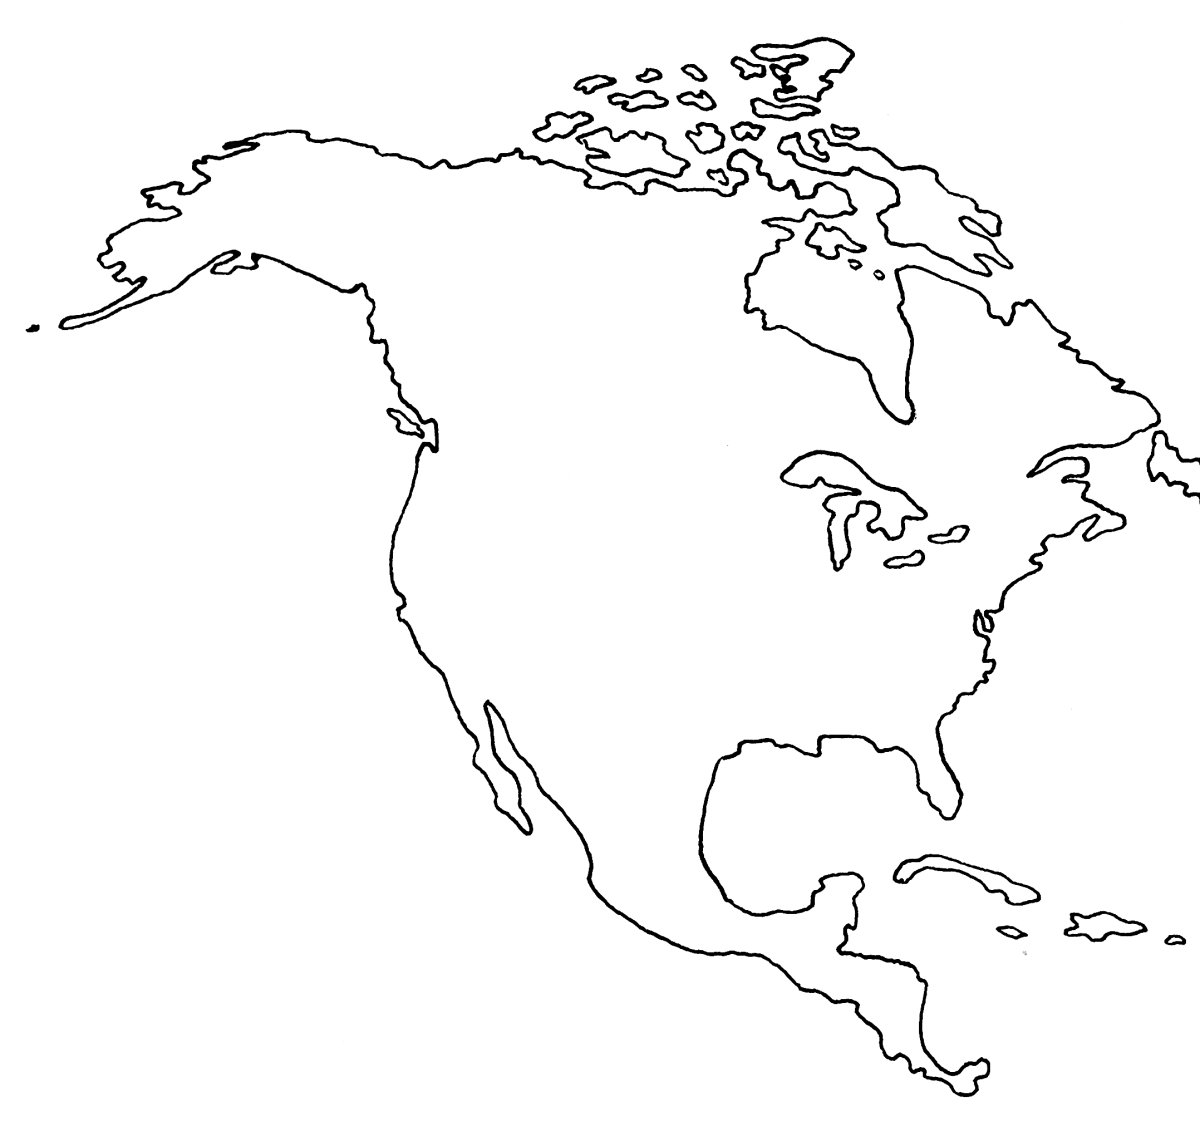 Северная америка рисунок материка. Контур материка Северная Америка. Контур материка Южная Америка. Контуры материков Северная Америка. Контур материкоюжная Америка.